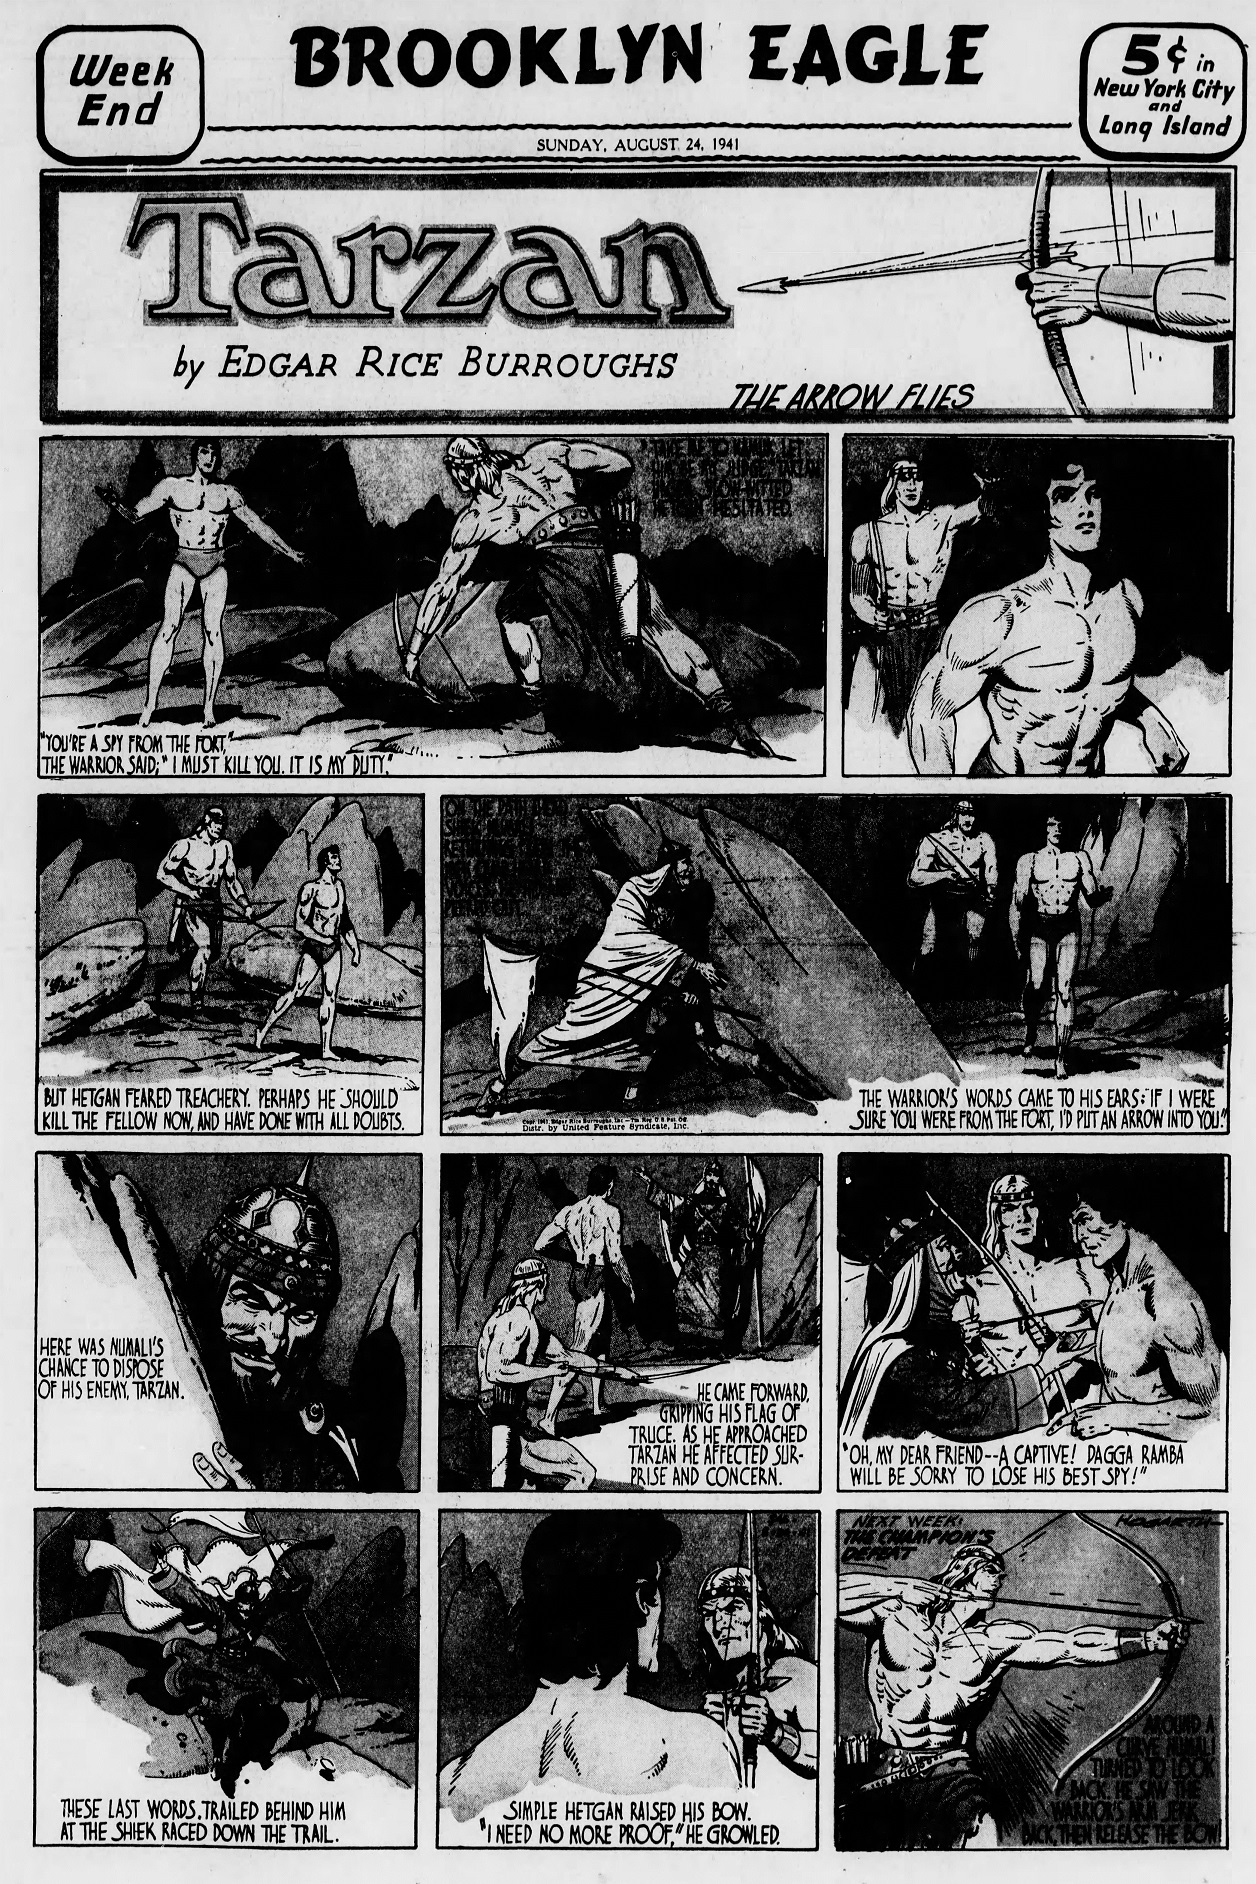 The_Brooklyn_Daily_Eagle_Sun__Aug_24__1941_(4).jpg